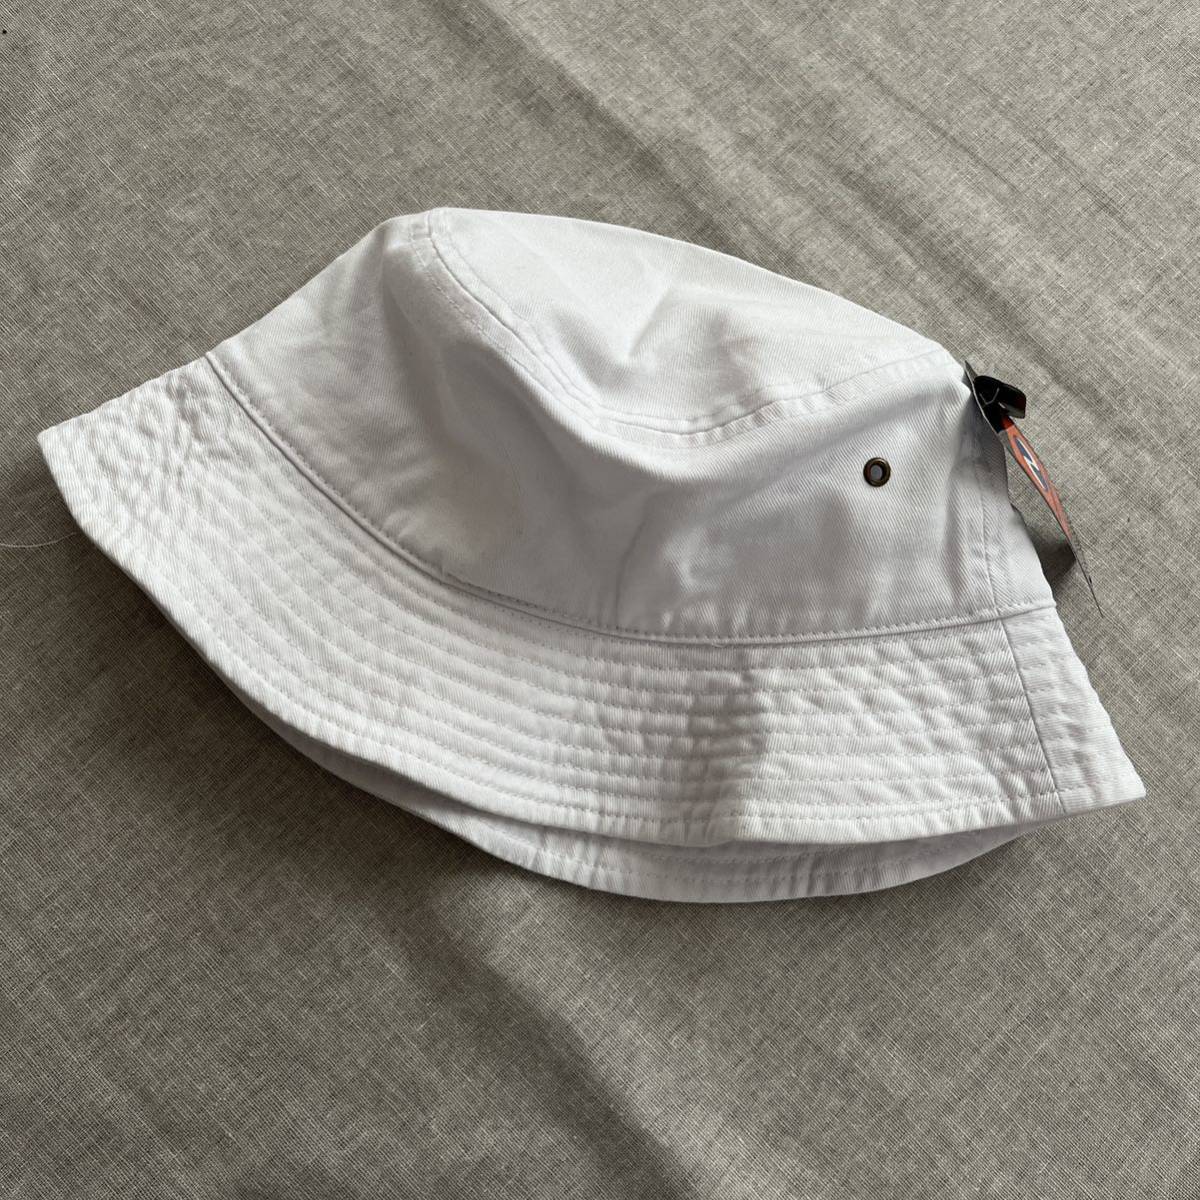 ニューハッタン コットン バケットハット 帽子 S/M ホワイト 白